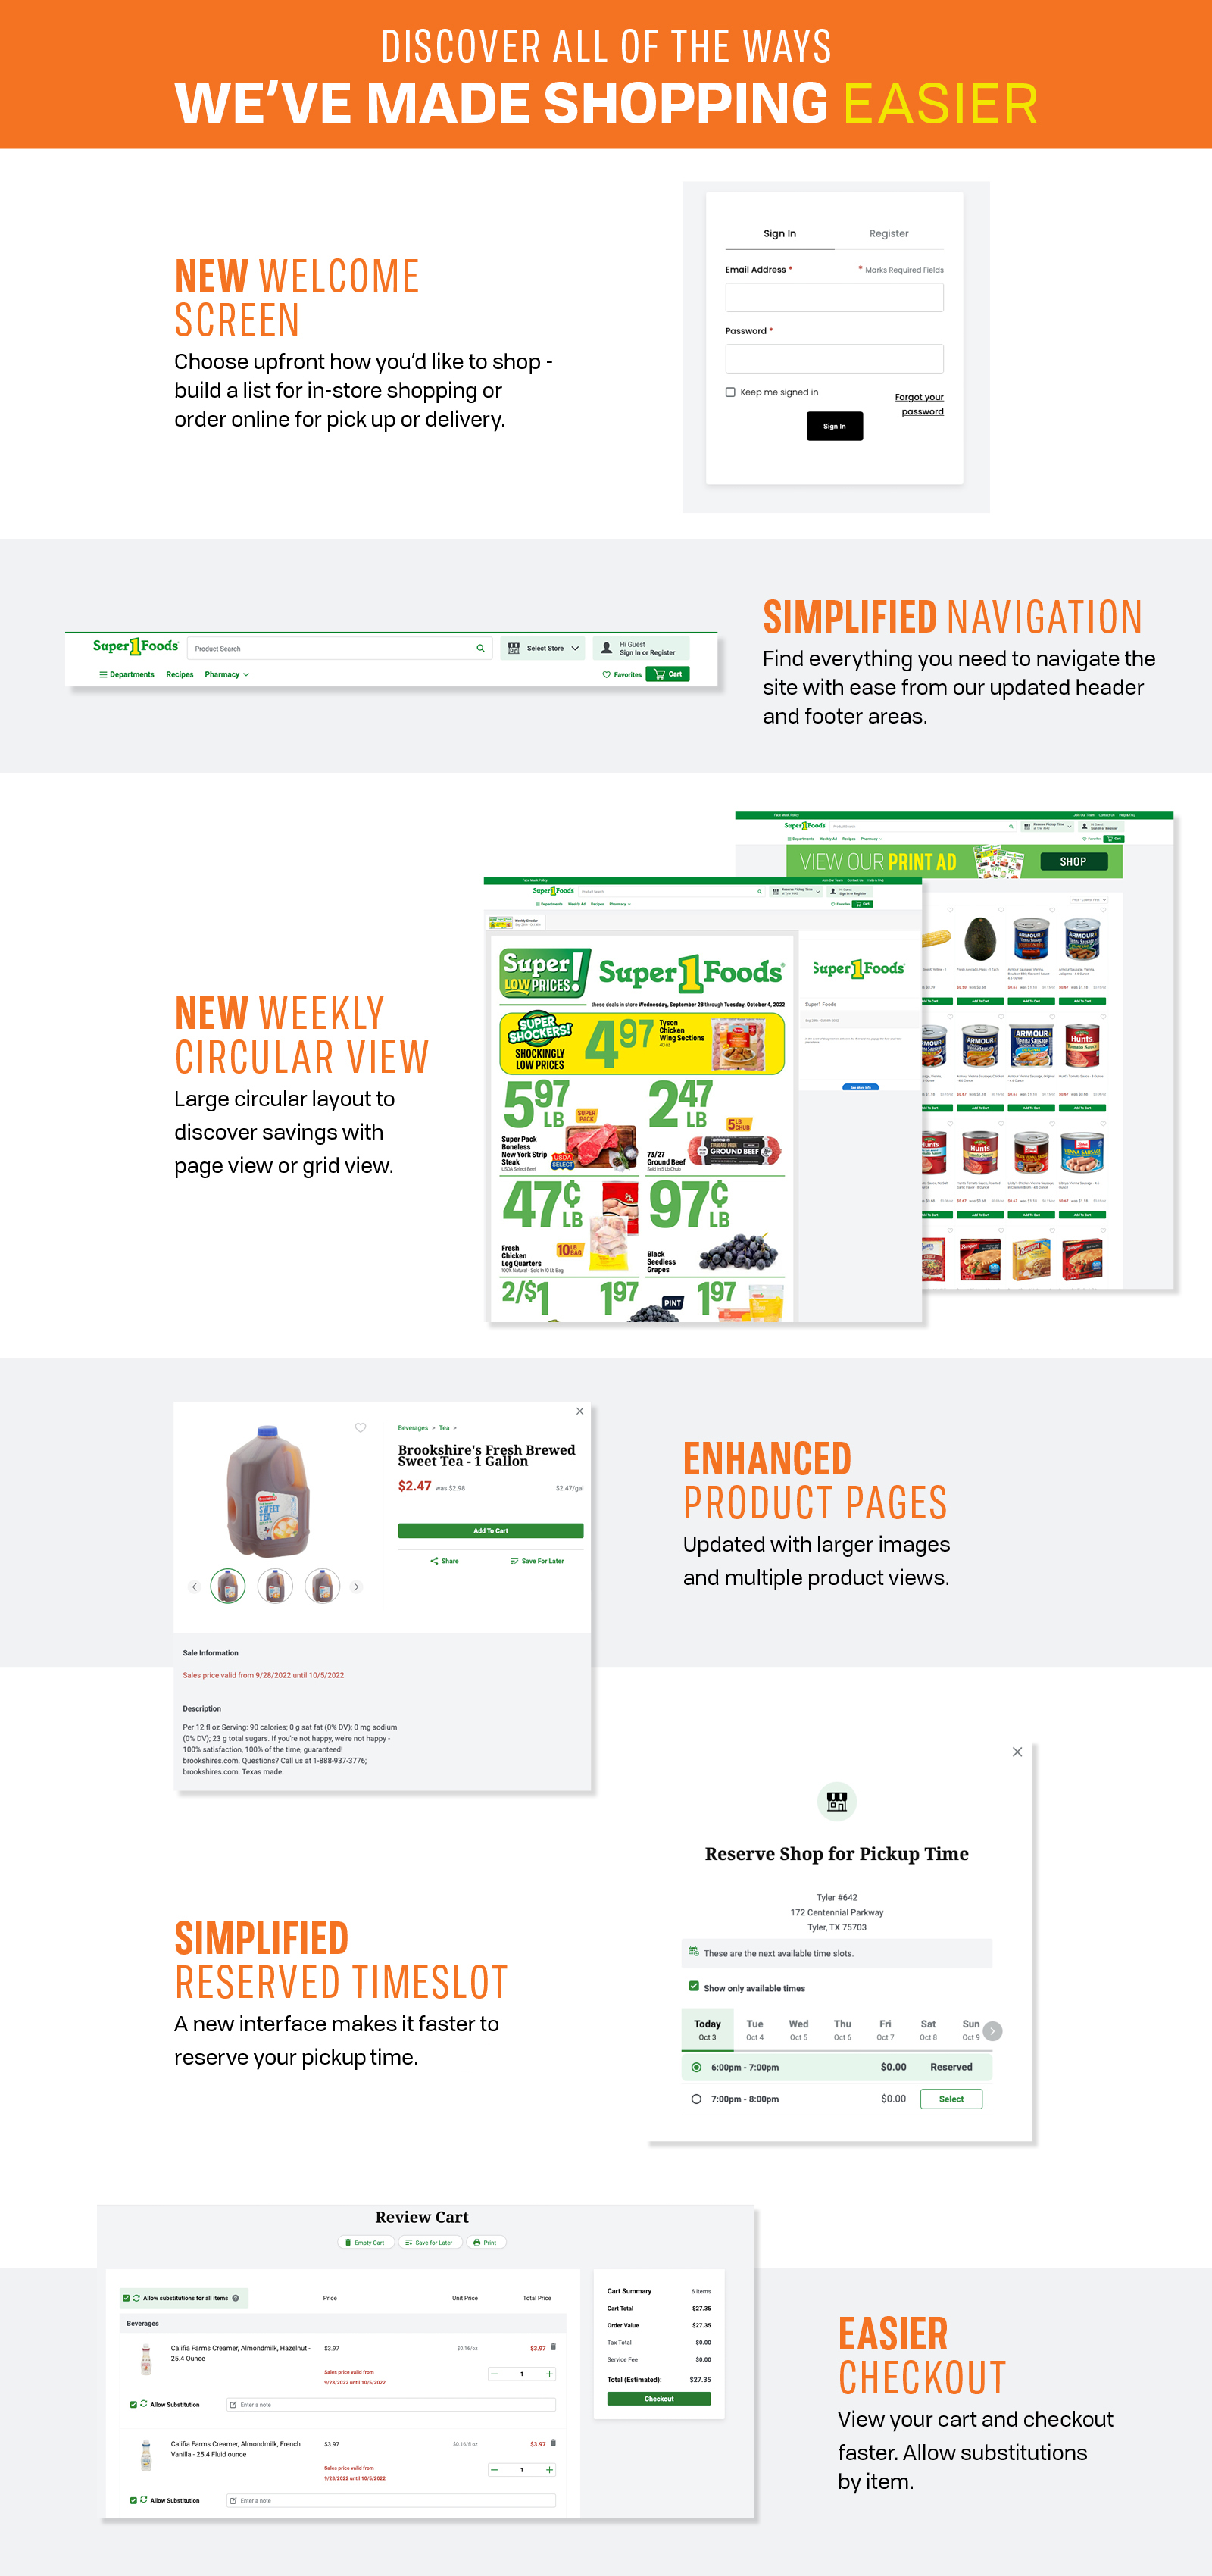 Super 1 Foods new website